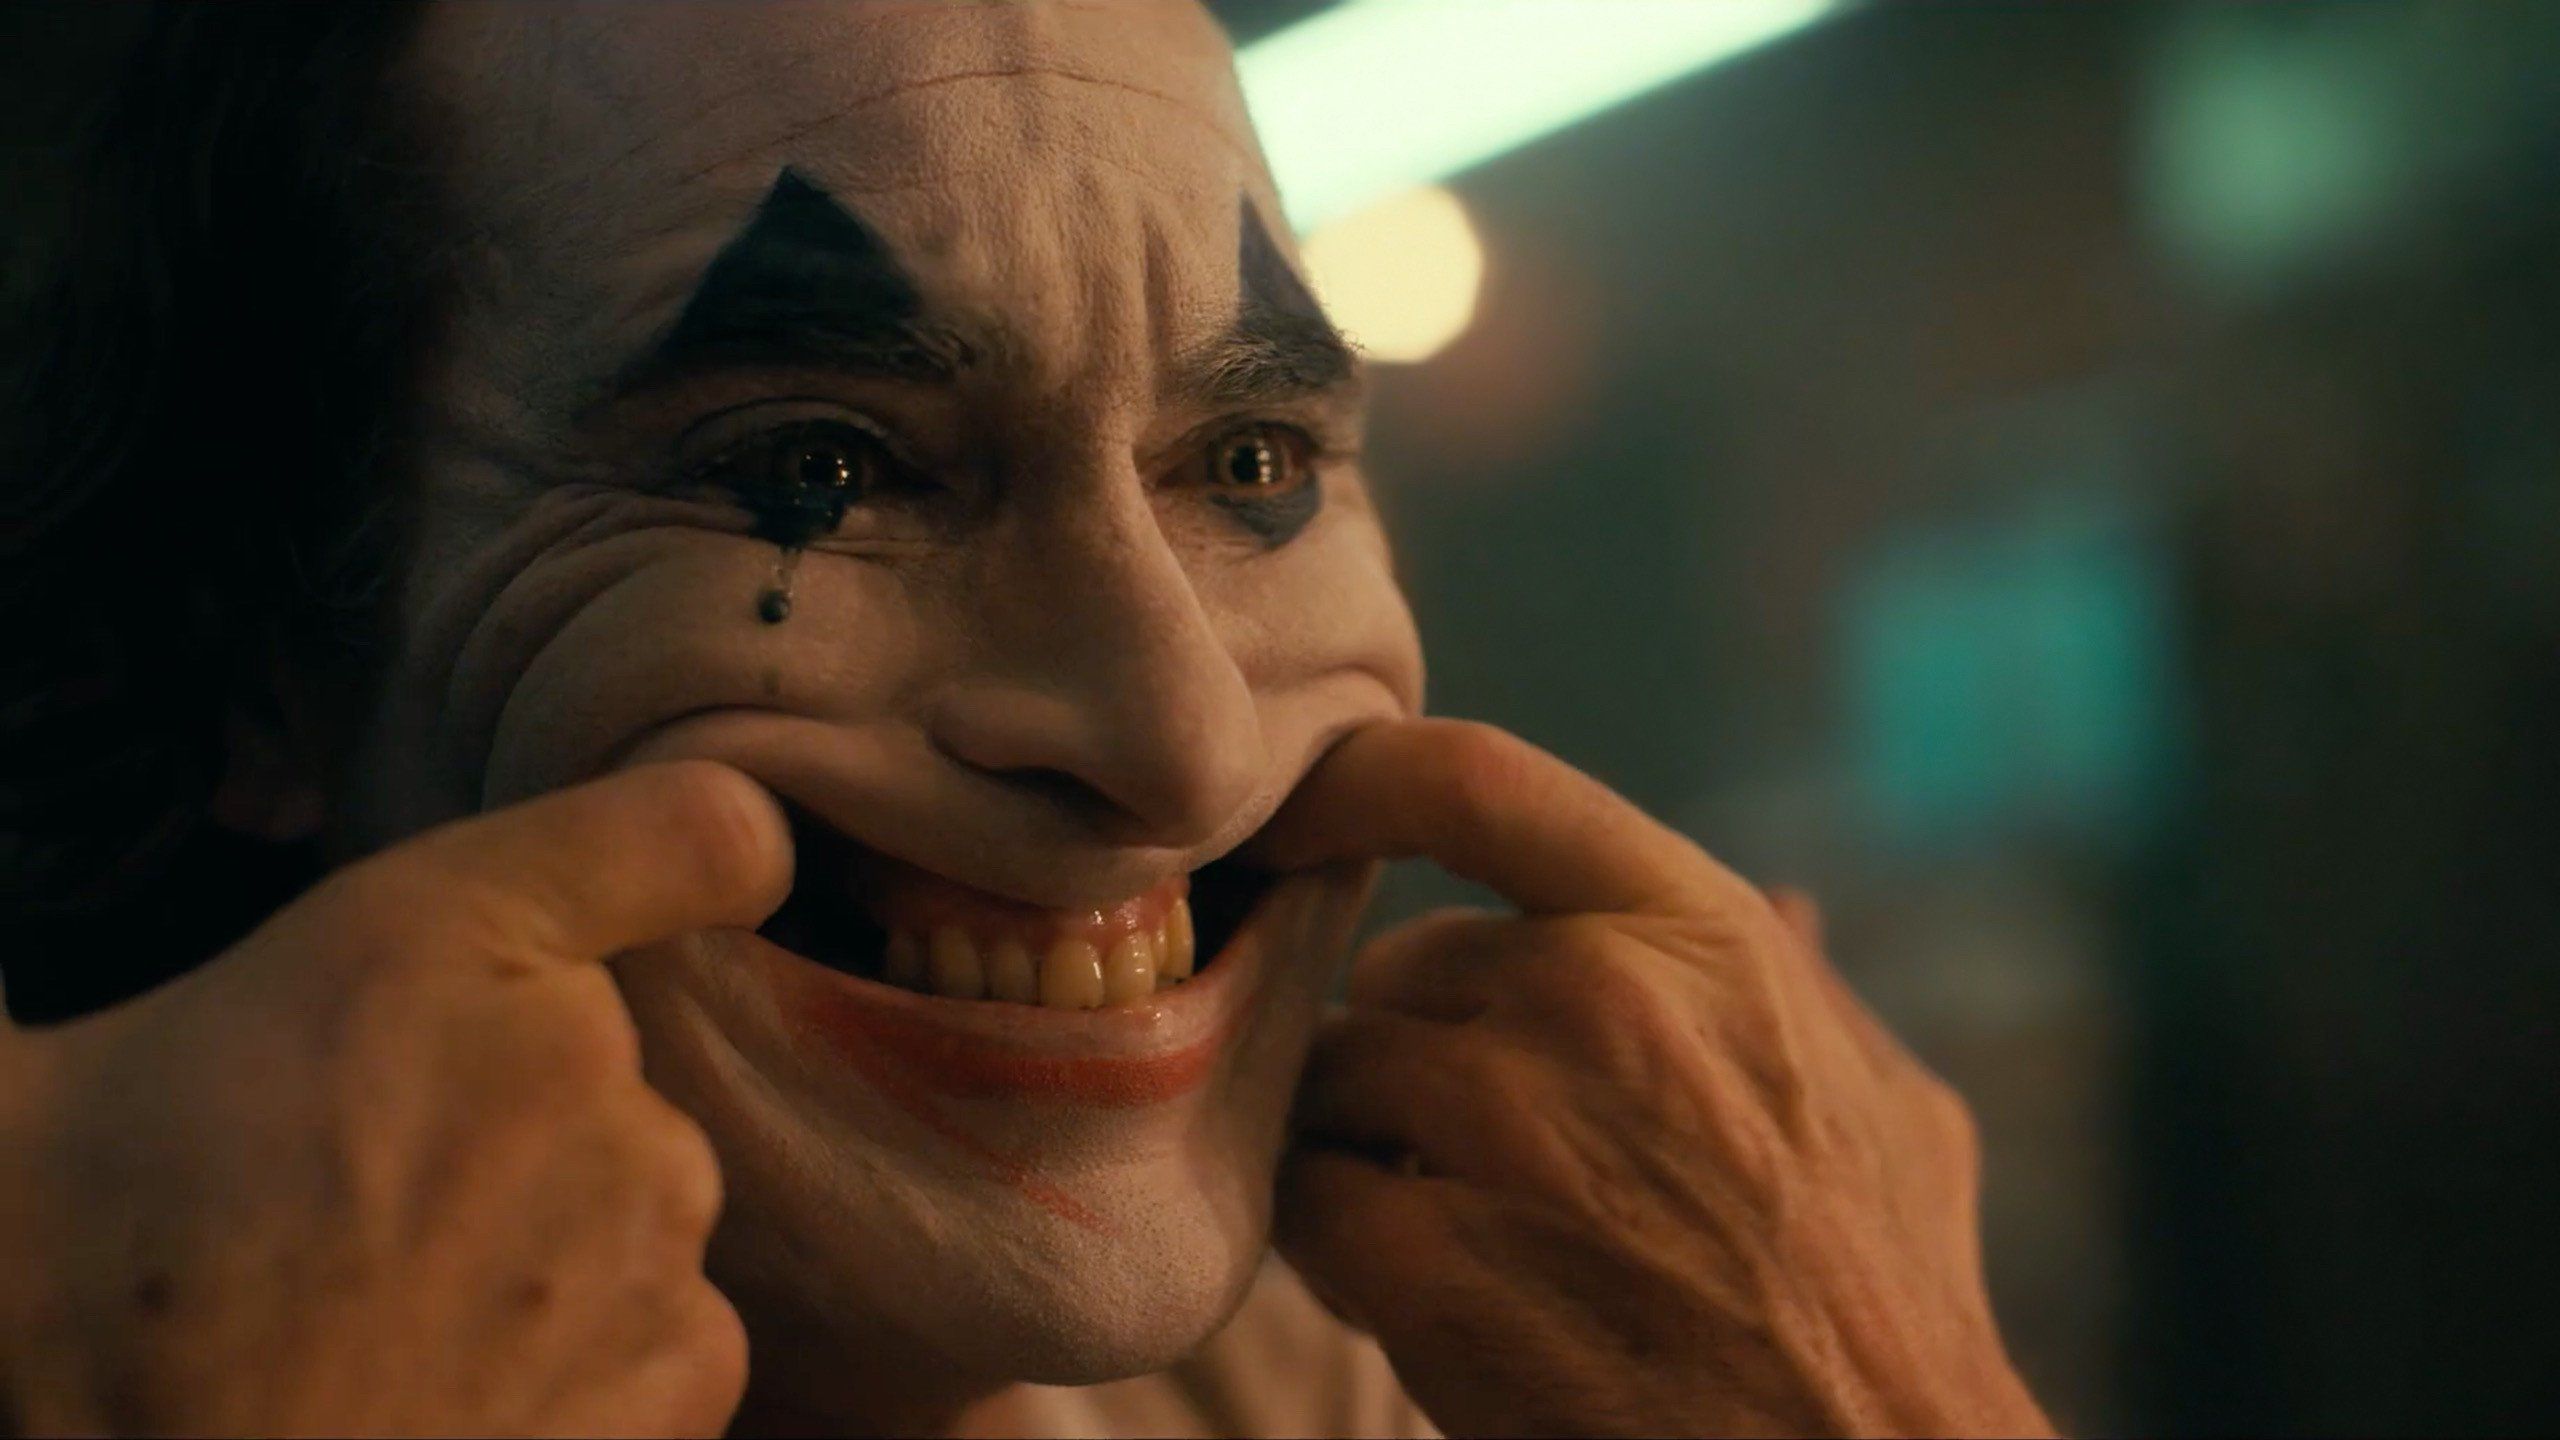 The Joker smile wallpaper. Smile wallpaper, Film stills, Joker